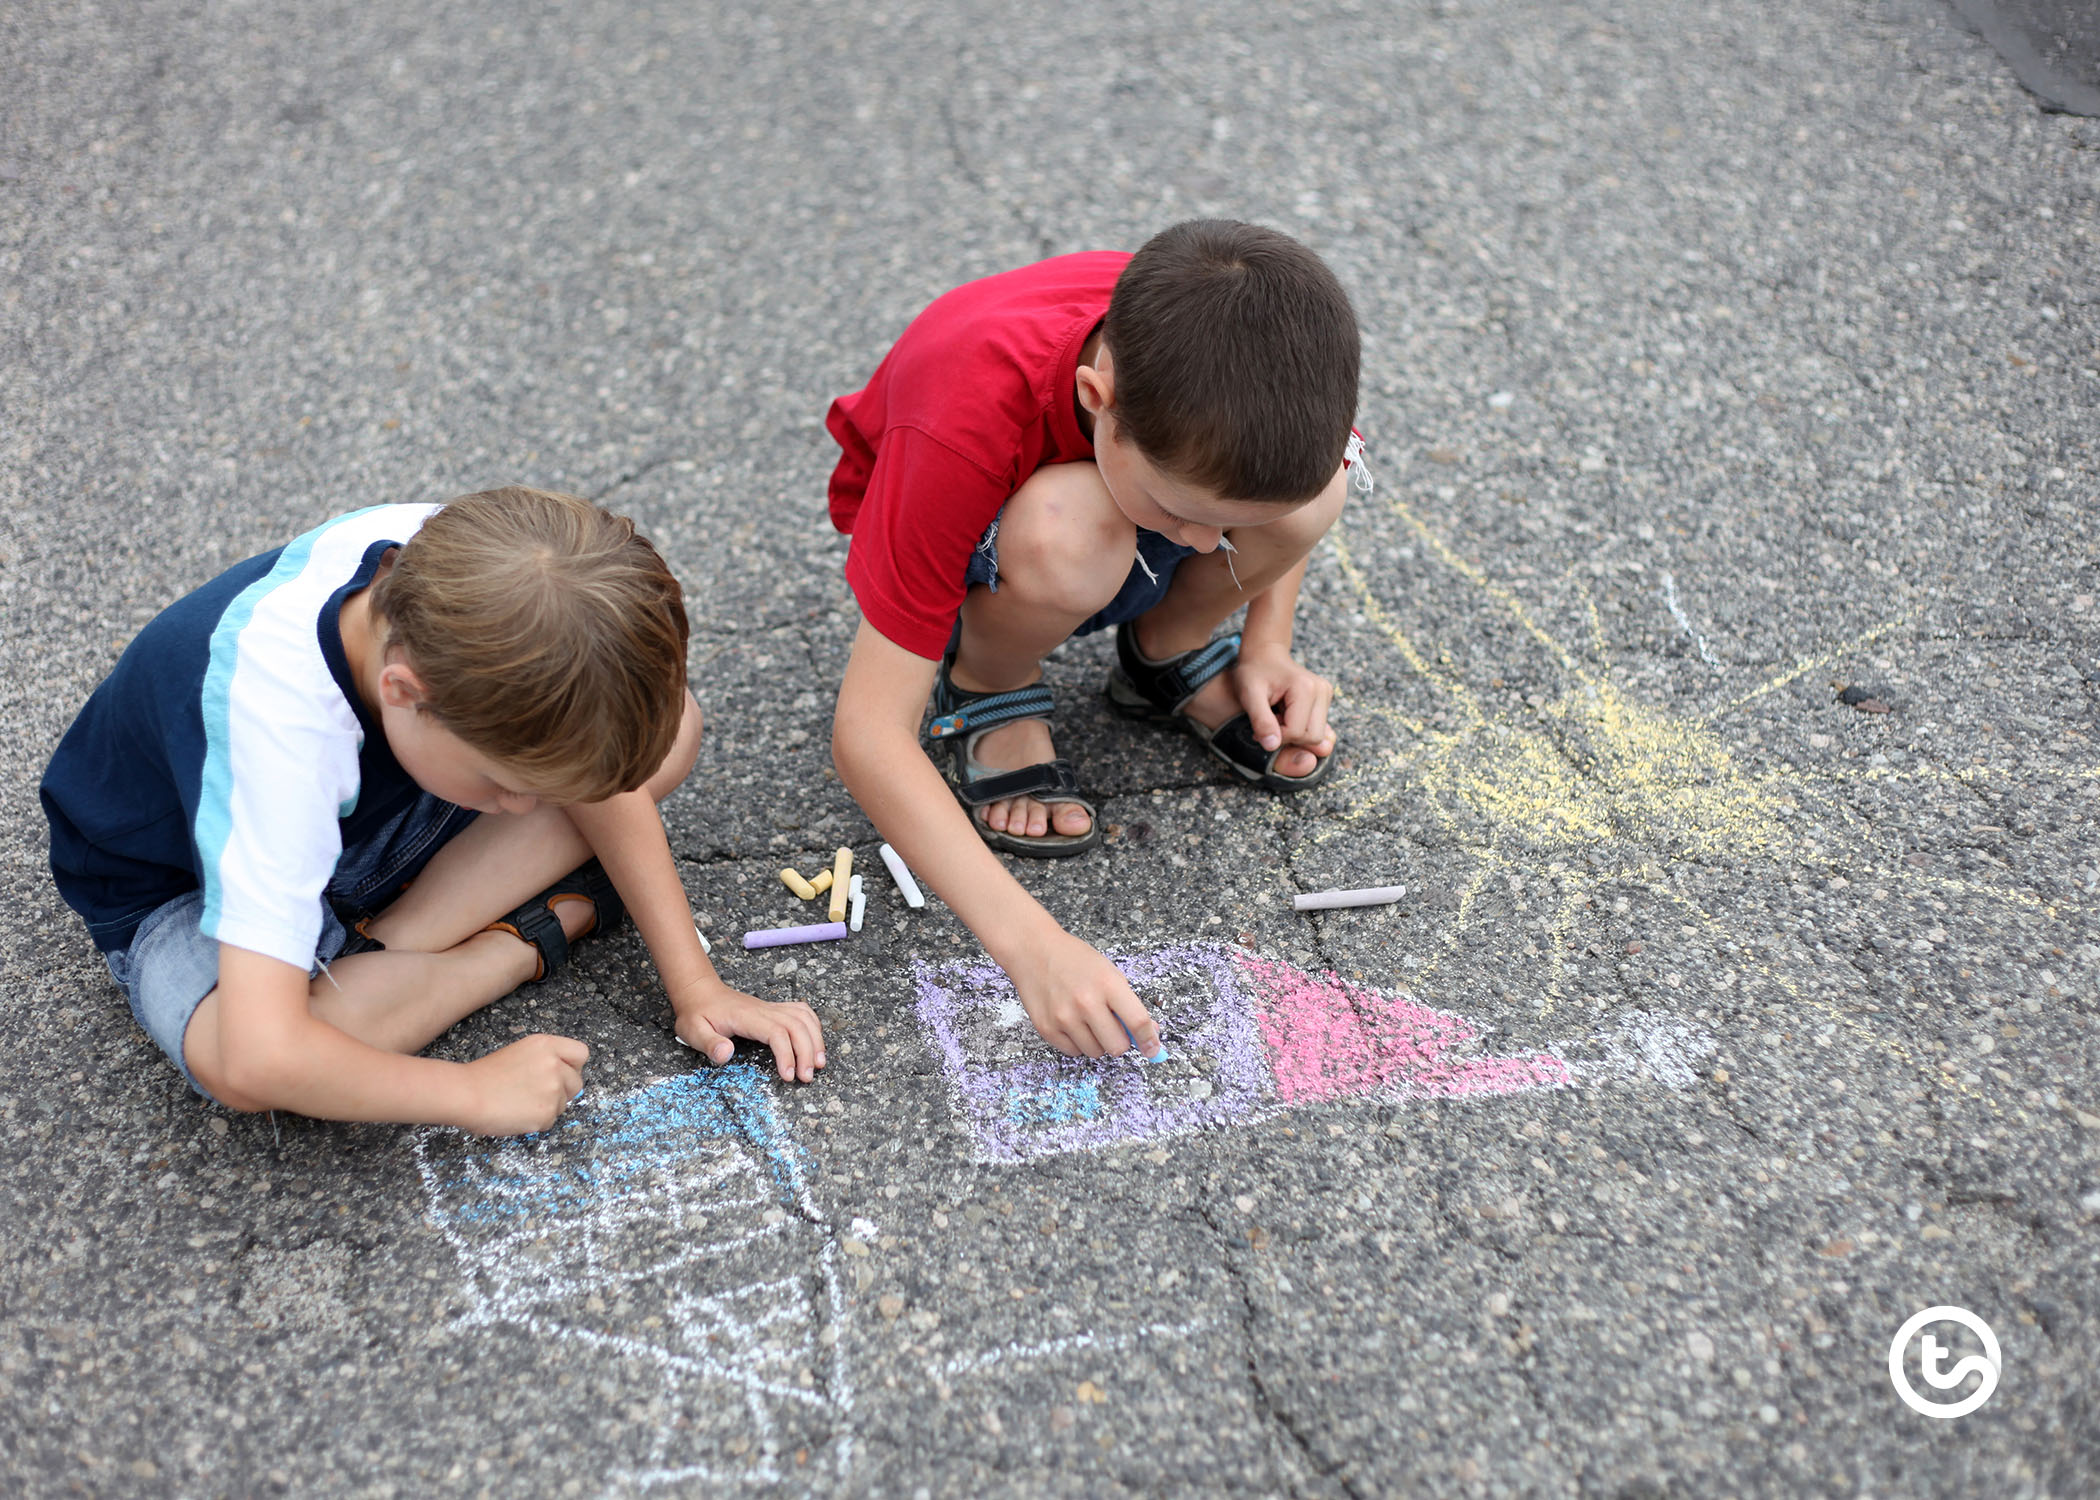 Using sidewalk chalk for learning.